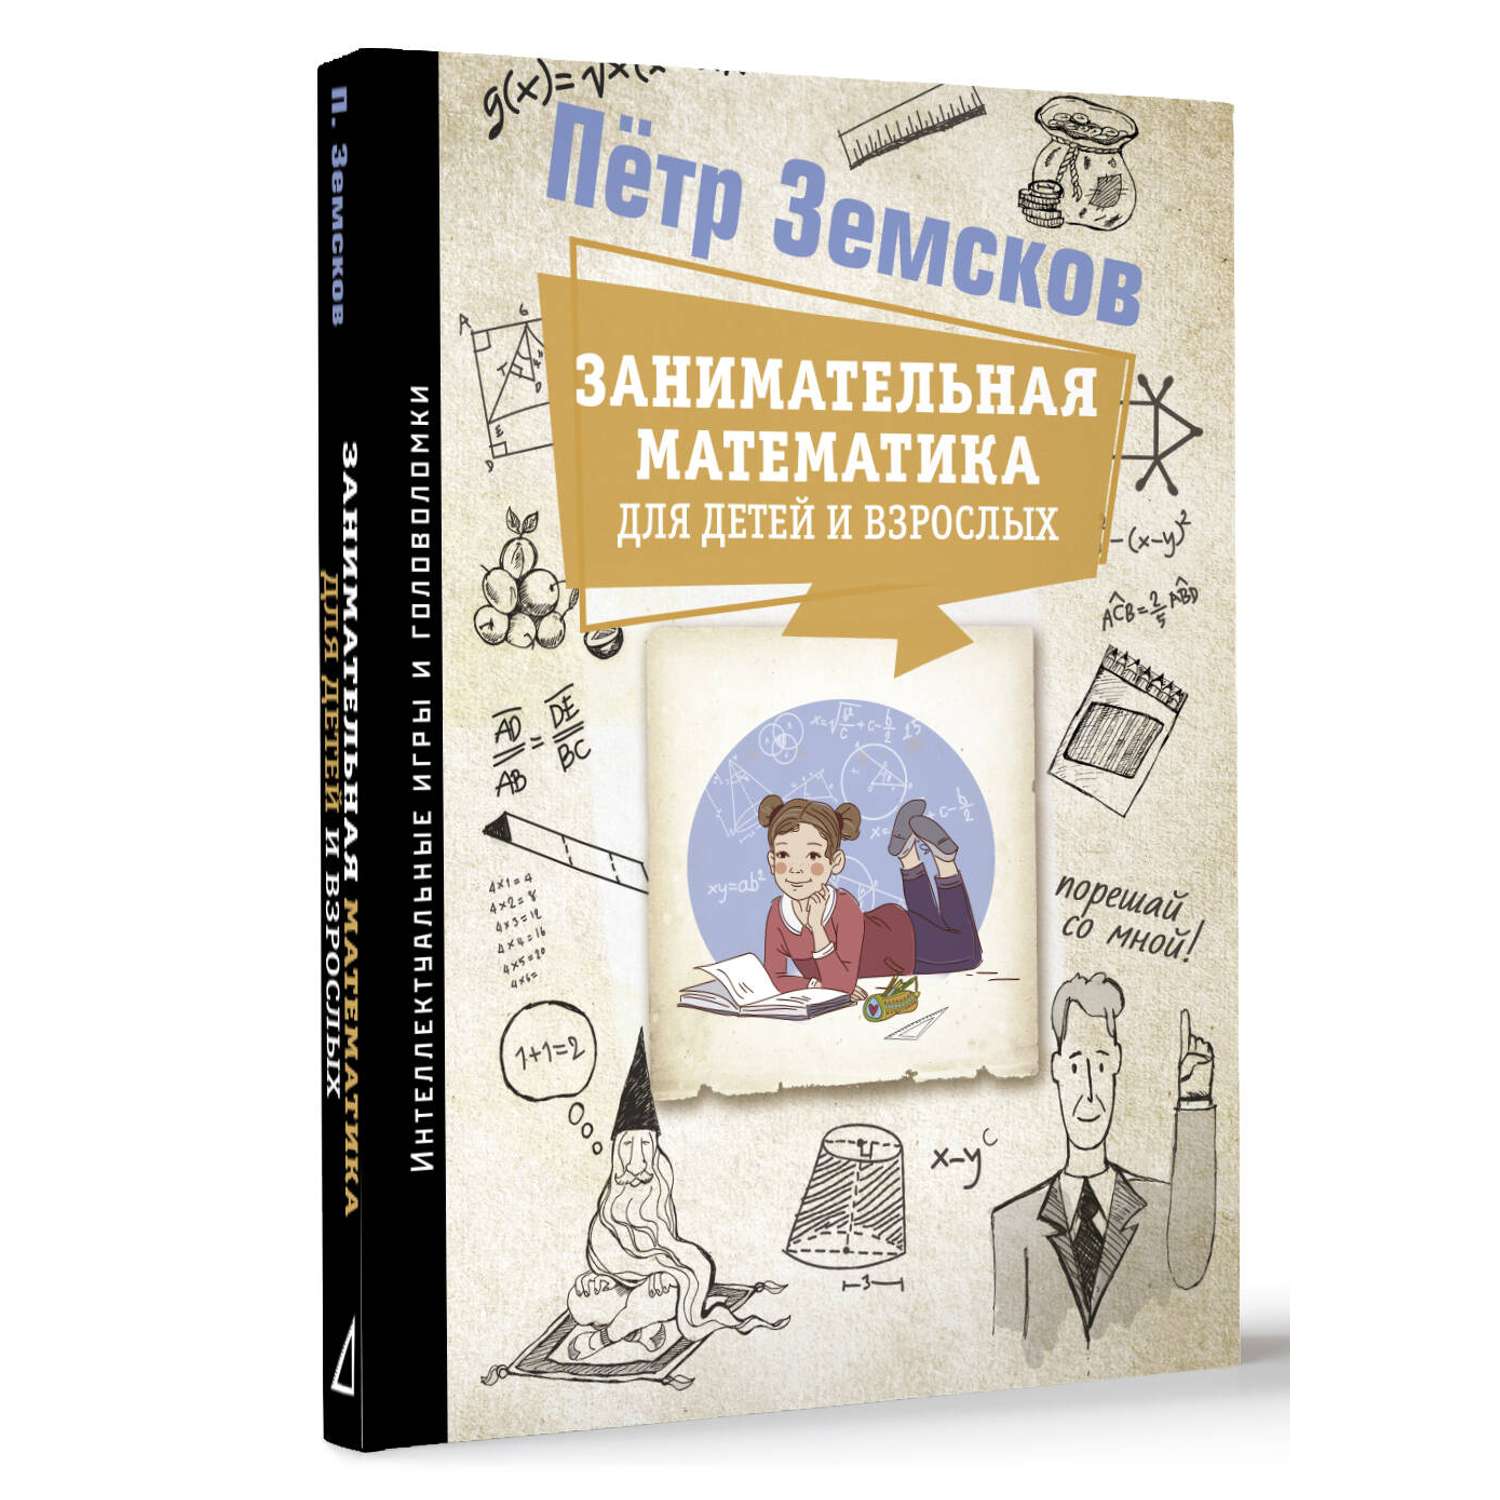 Книги АСТ Занимательная математика для детей и взрослых - фото 2